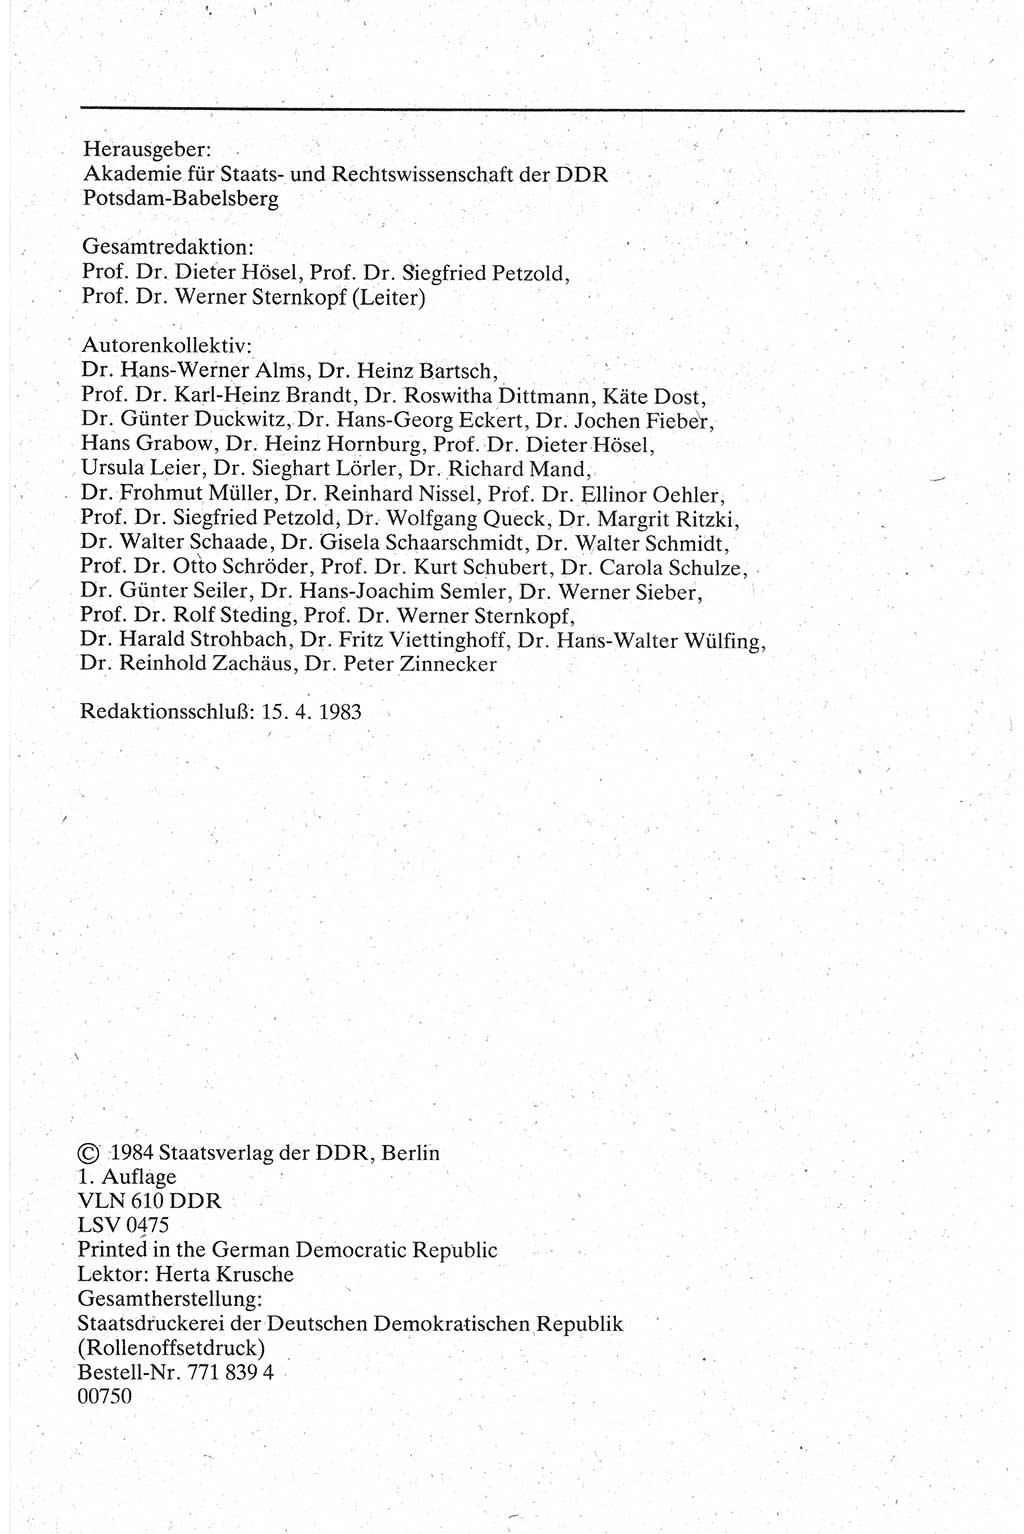 Handbuch für den Abgeordneten [Deutsche Demokratische Republik (DDR)] 1984, Seite 4 (Hb. Abg. DDR 1984, S. 4)